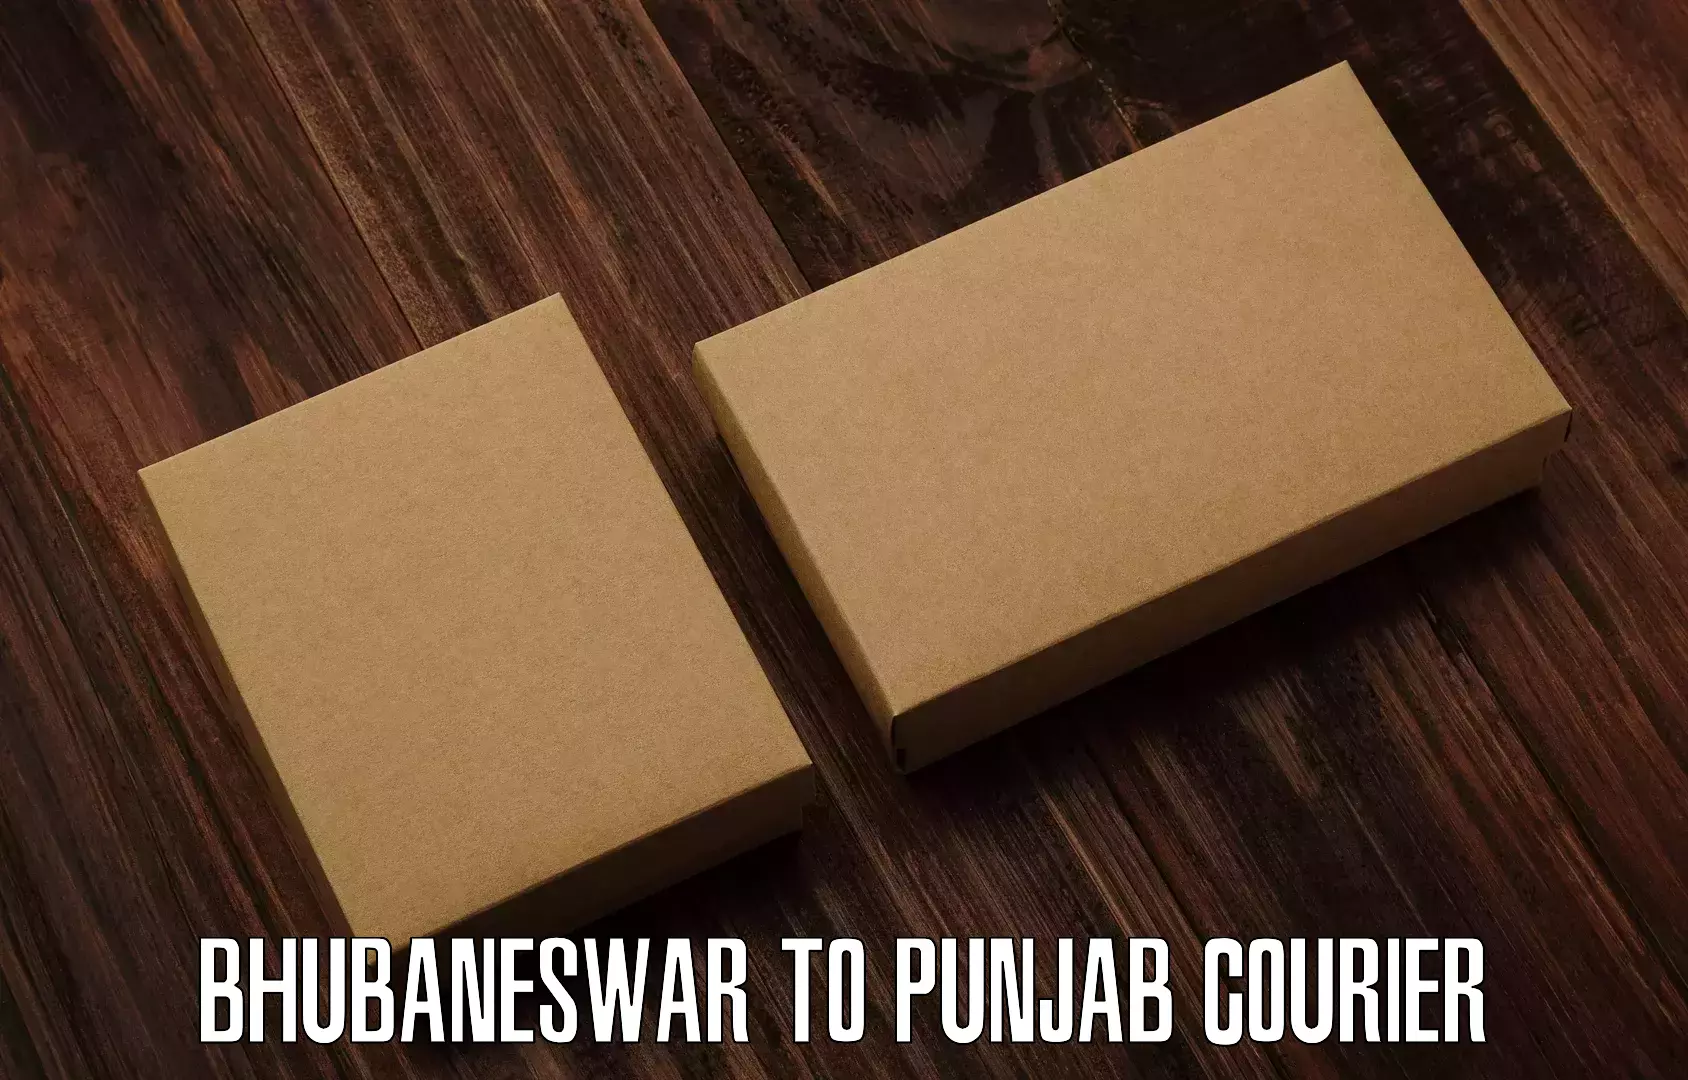 High-speed parcel service Bhubaneswar to Garhshankar